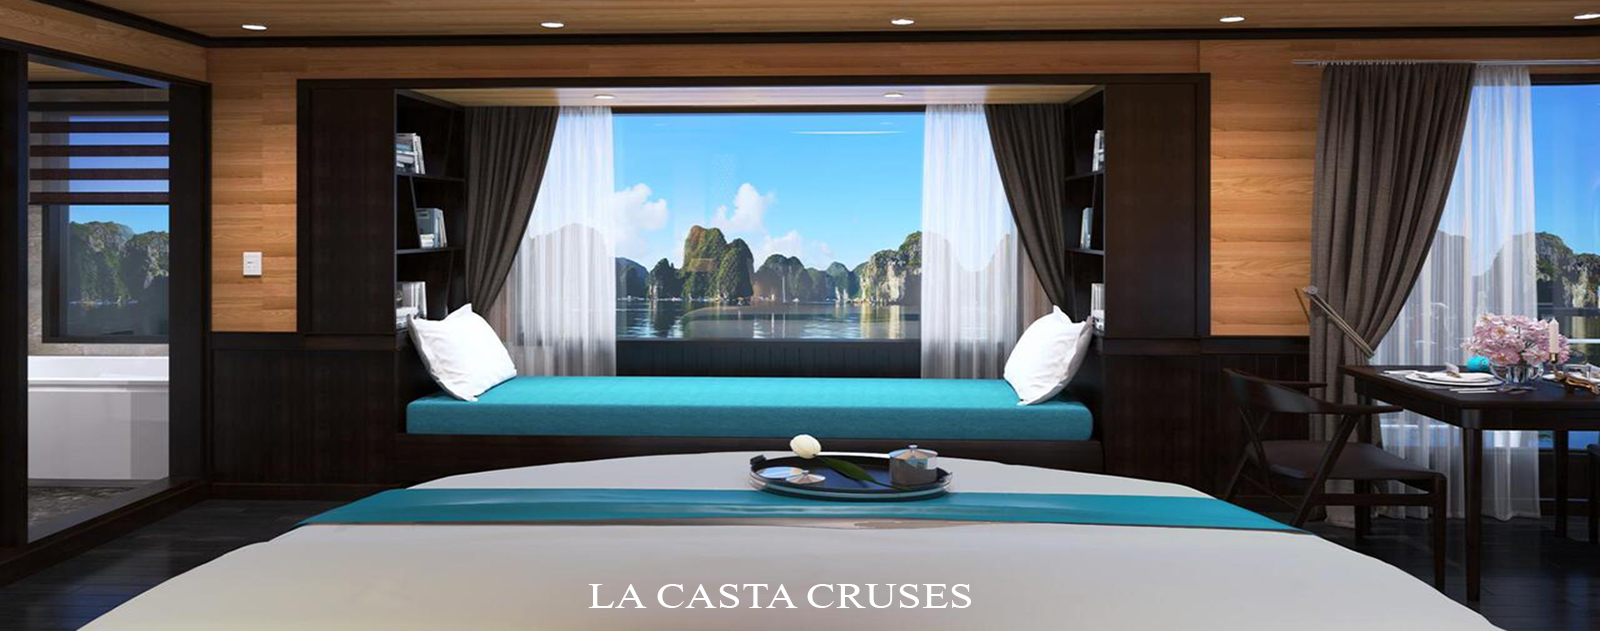 La Casta Cruise